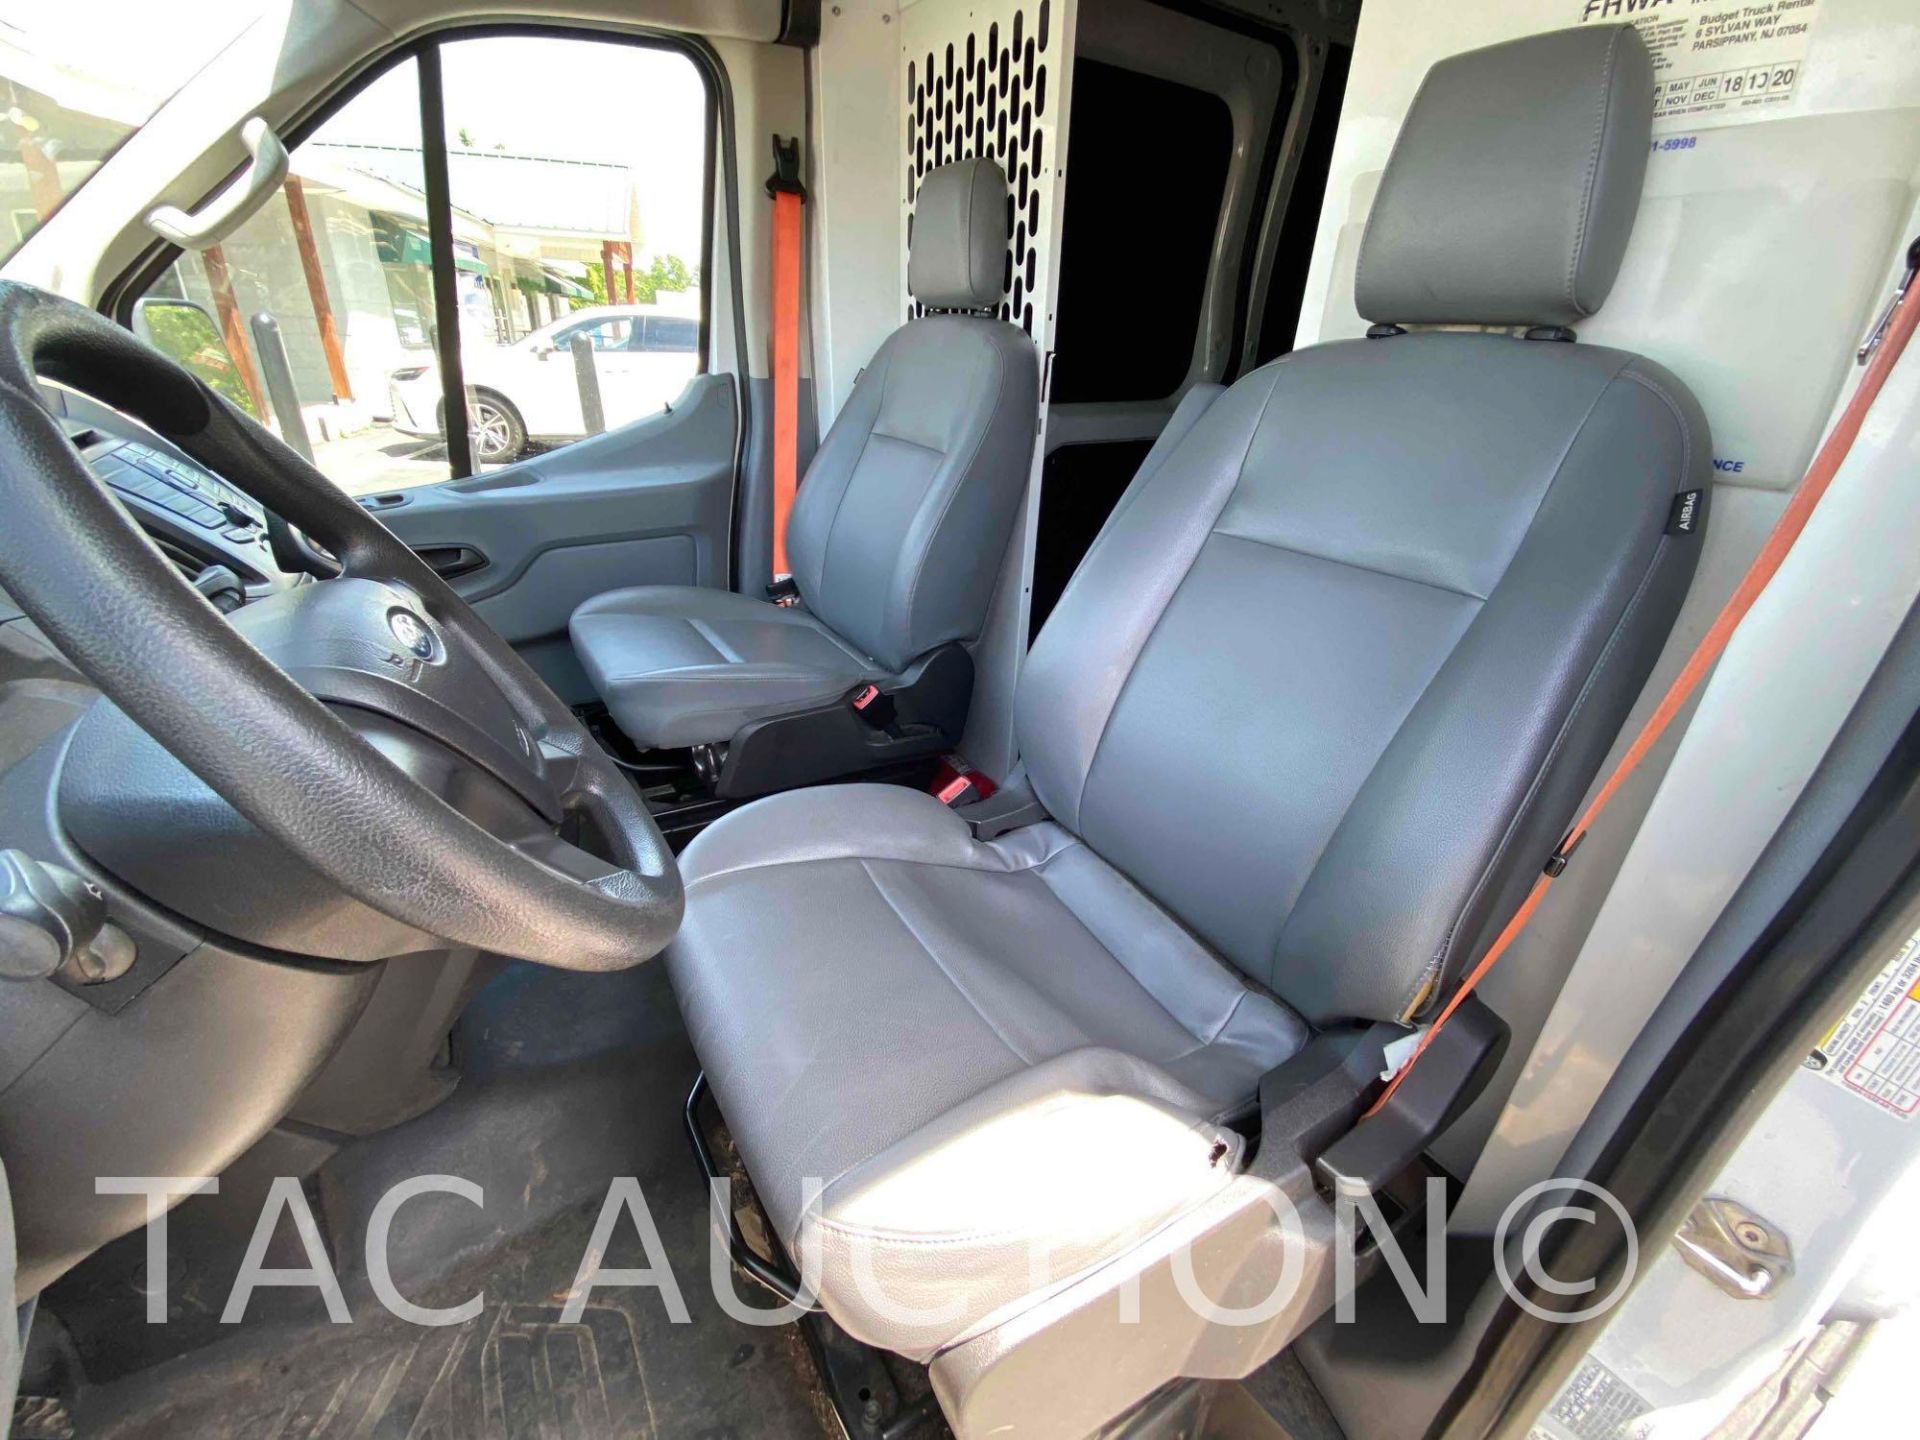 2019 Ford Transit 150 Cargo Van - Image 25 of 48